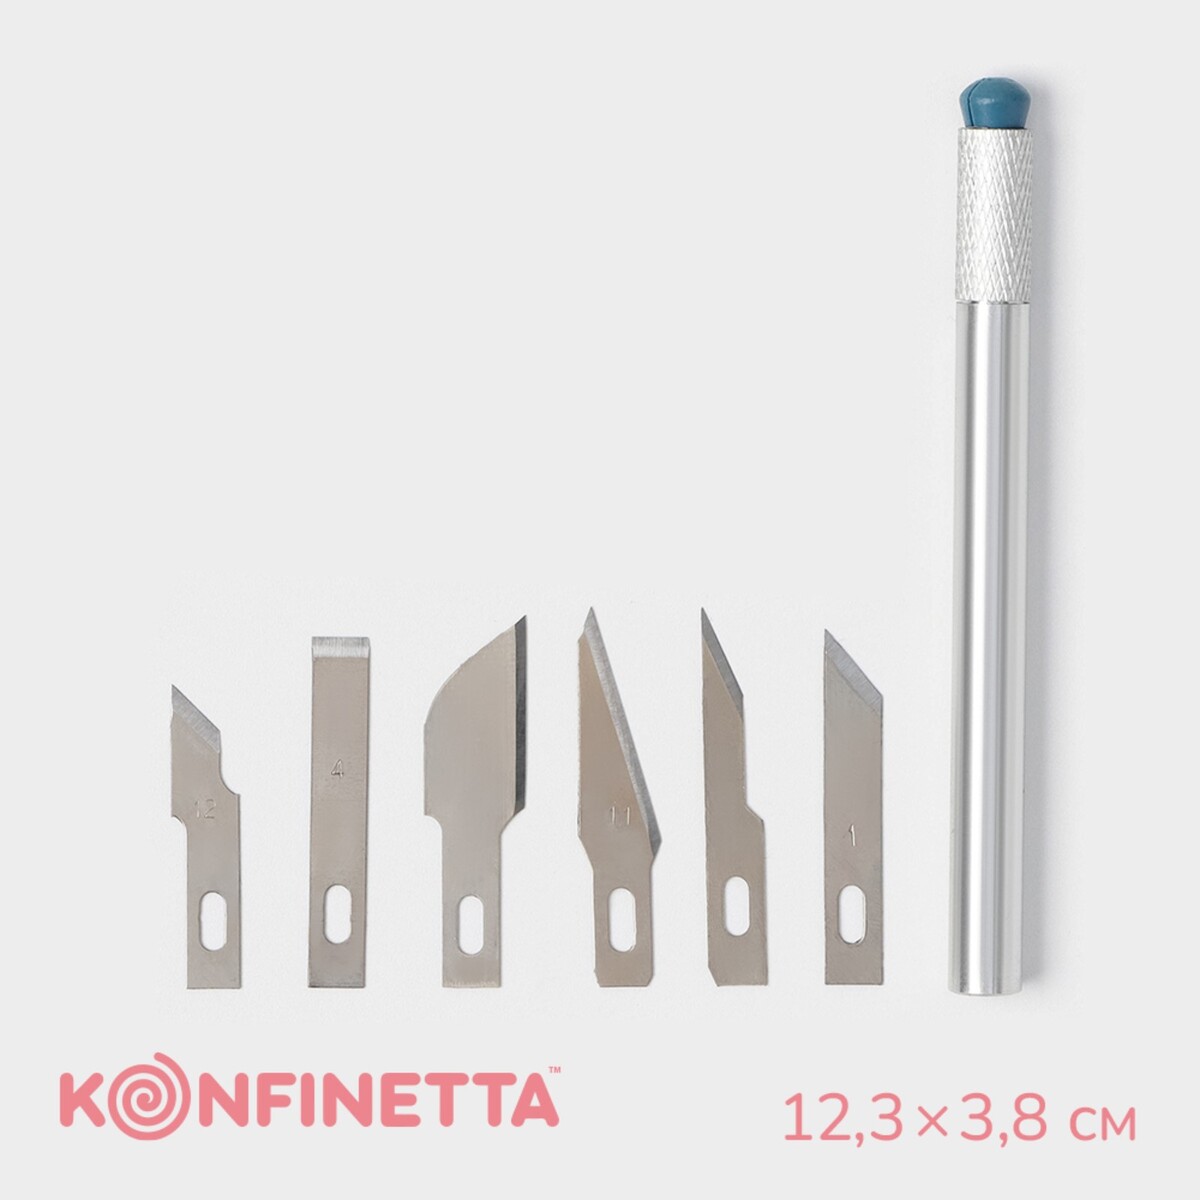 Набор кондитерских инструментов для моделирования konfinetta, 7 предметов, нержавеющая сталь набор бит matrix 11316 адаптер для бит сталь s2 в пластиковом боксе 18 предметов